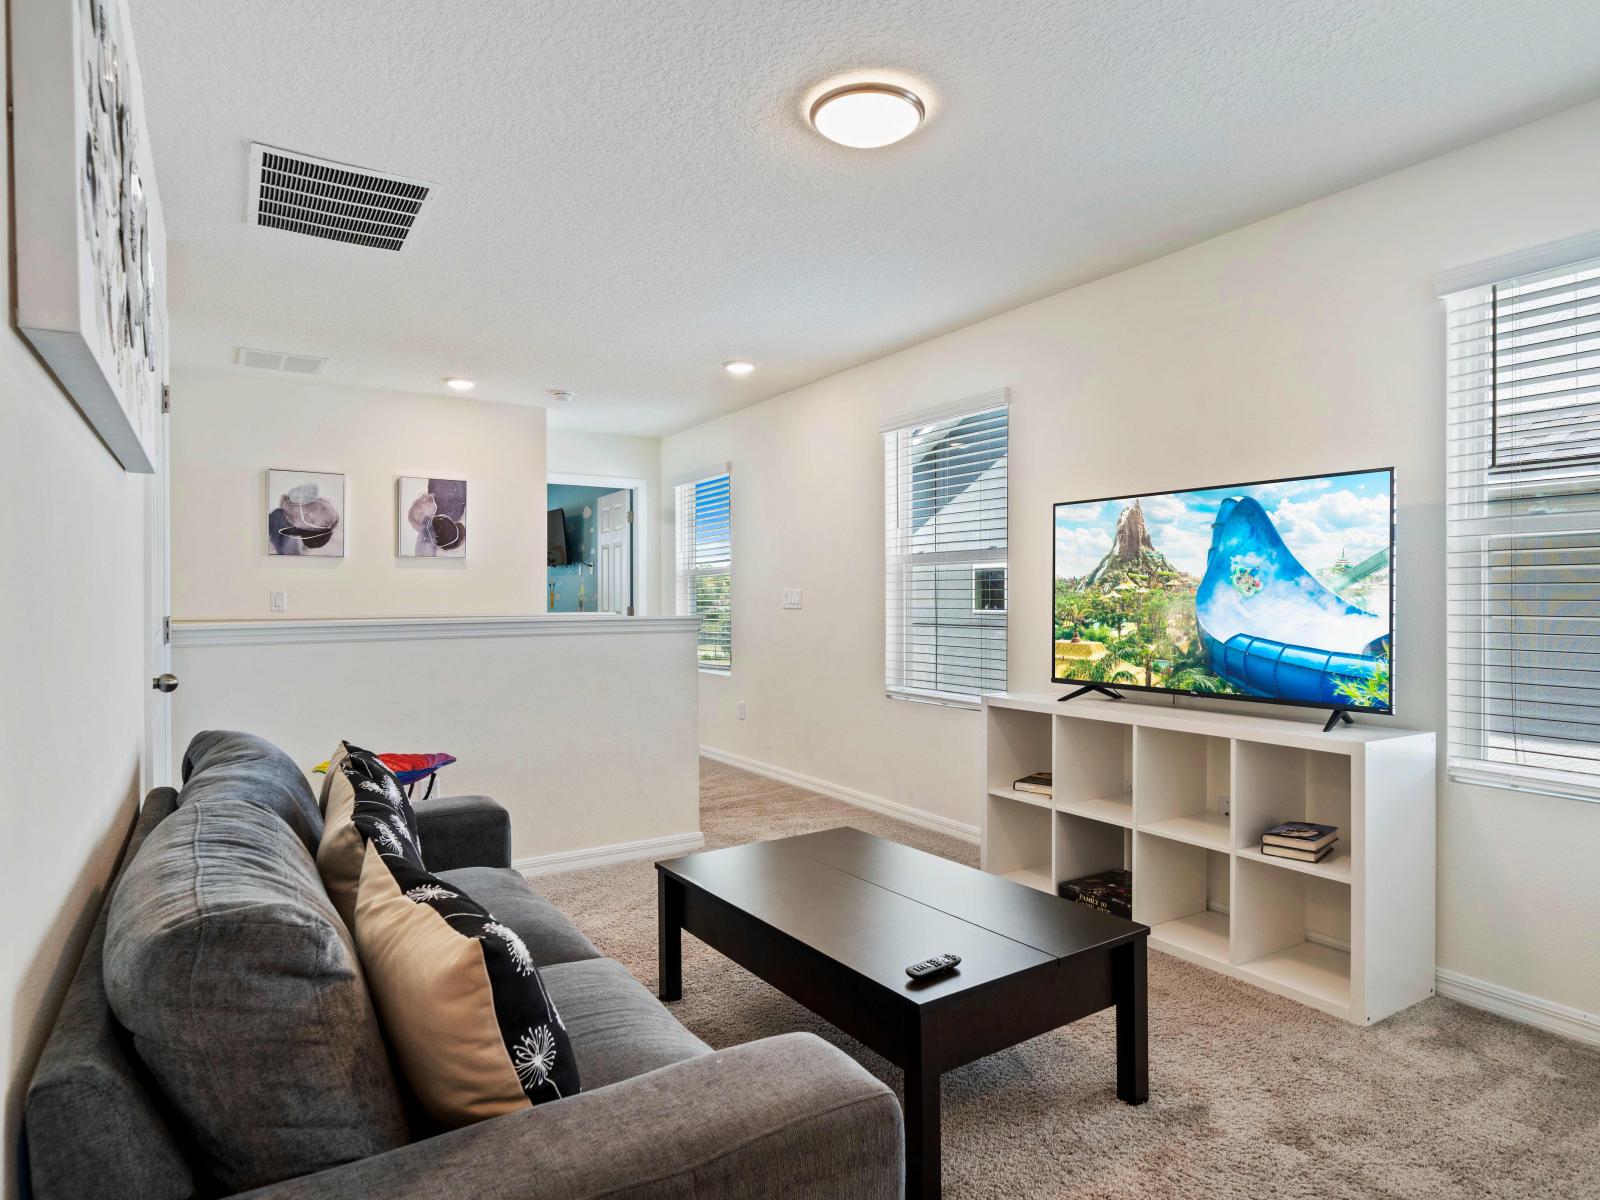 Loft area with Smart TV